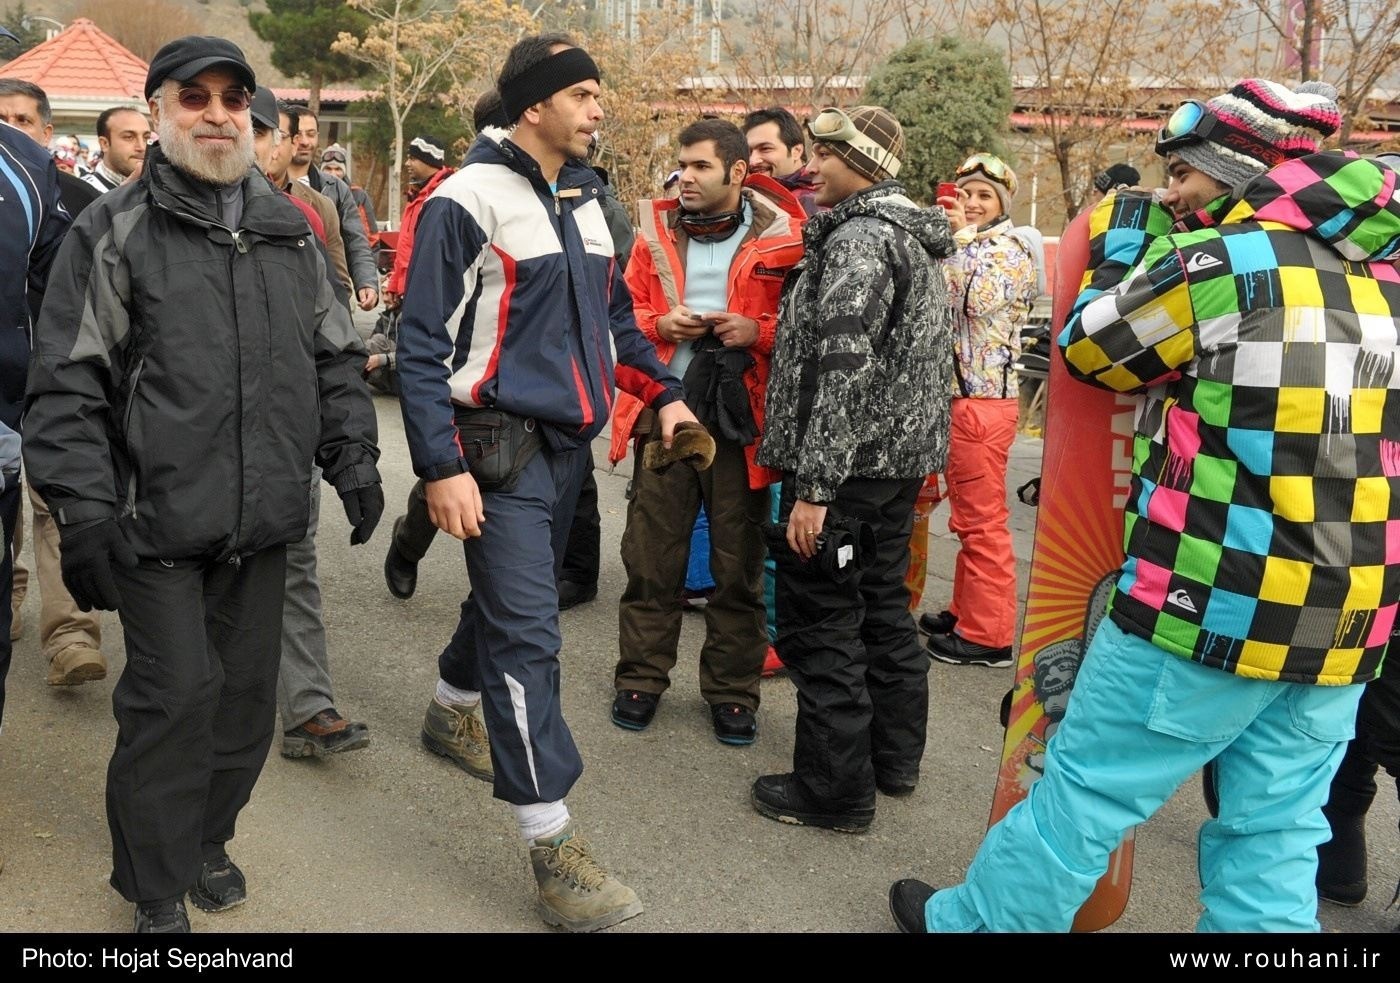 دکتر روحانی در جمع اسکی بازان - توچال